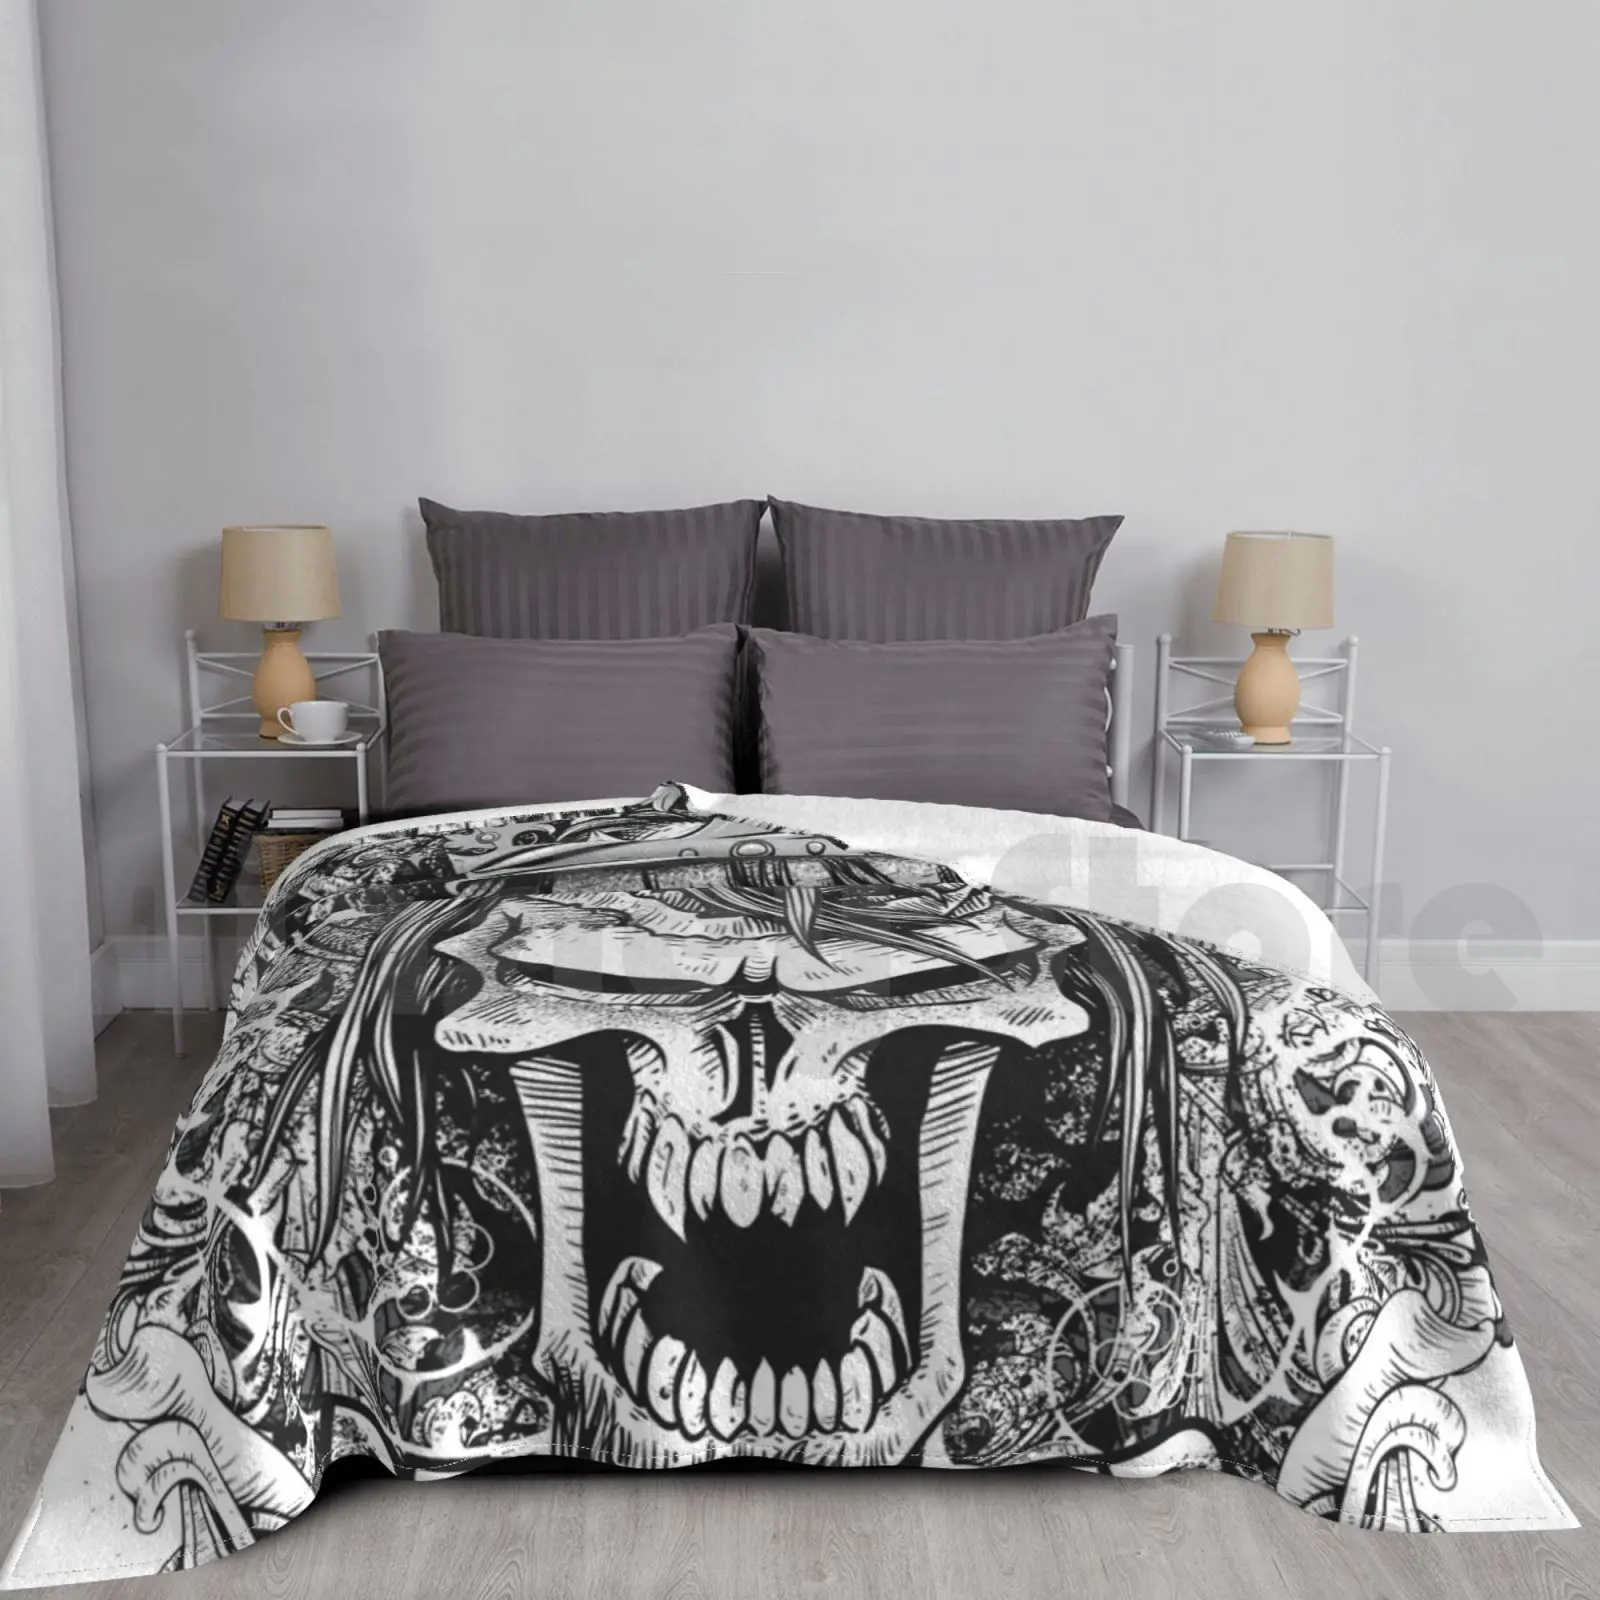 

Skull With Crown Blanket For Sofa Bed Travel Skull Crown Rock Creepy Terror Geek Demon